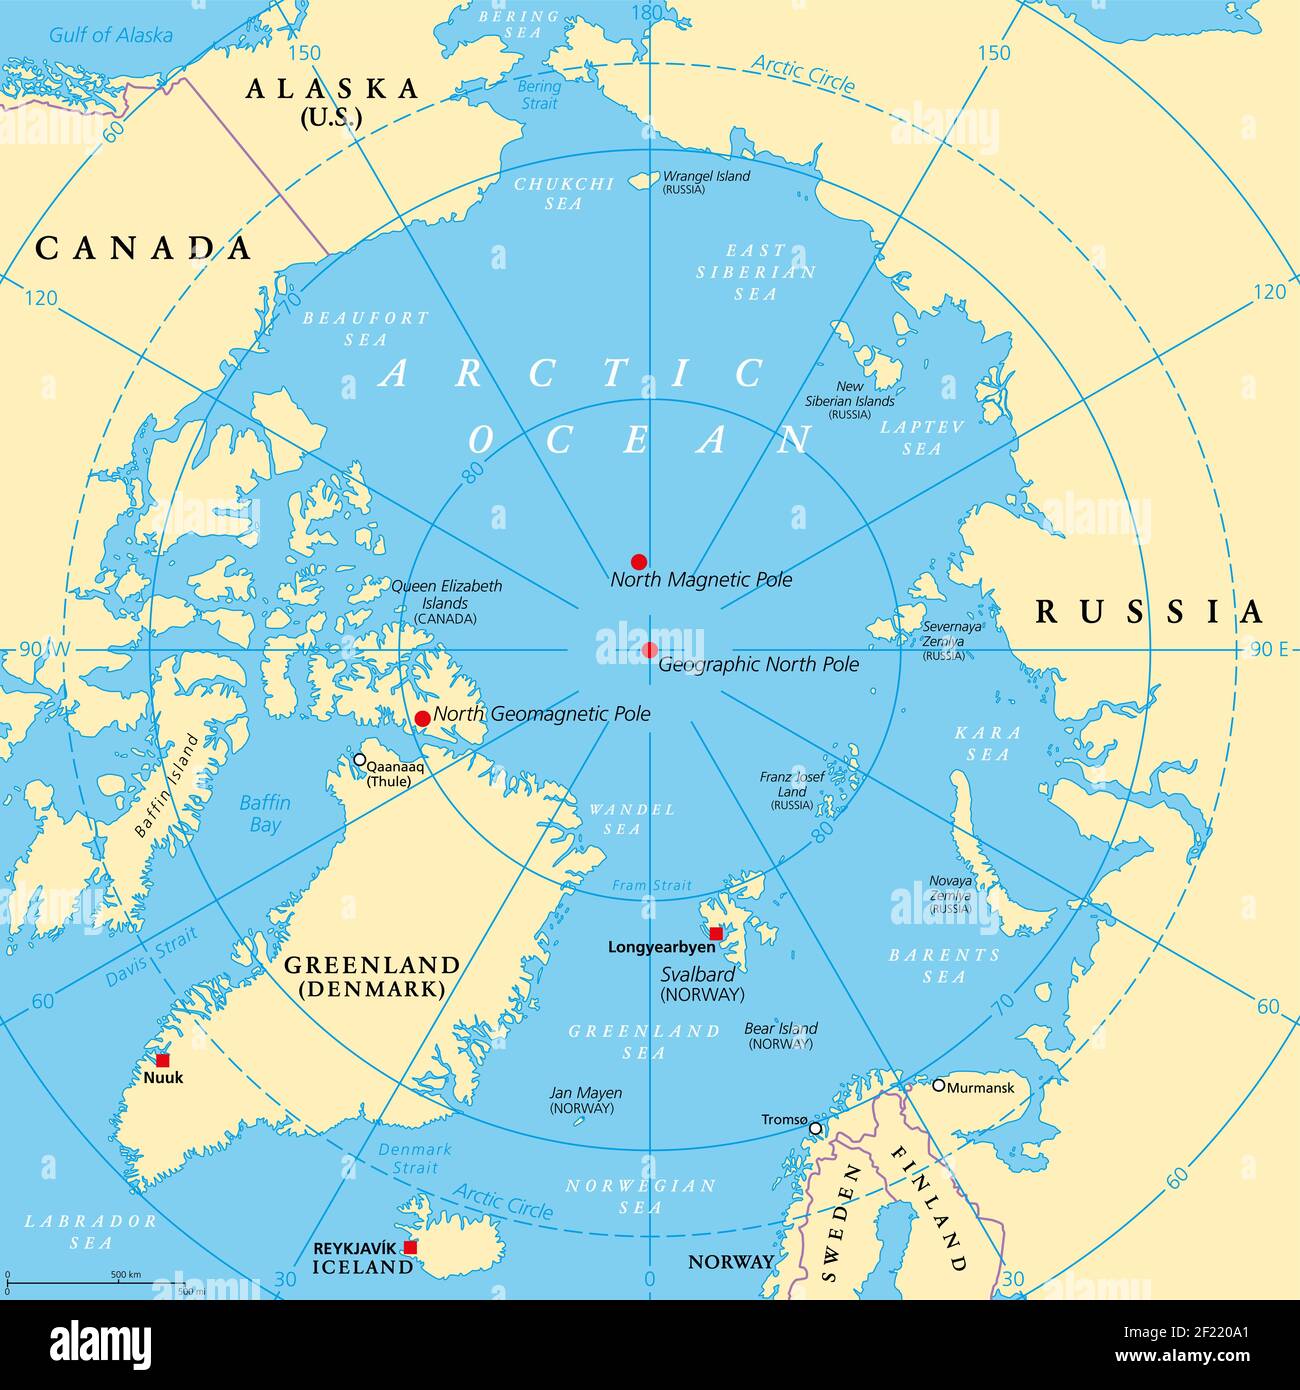 Geographische Lage des Nordpols der Erde, politische Karte. Magnetischer, geomagnetischer und geographischer Nordpol. Karte des Arktischen Ozeans. Stockfoto